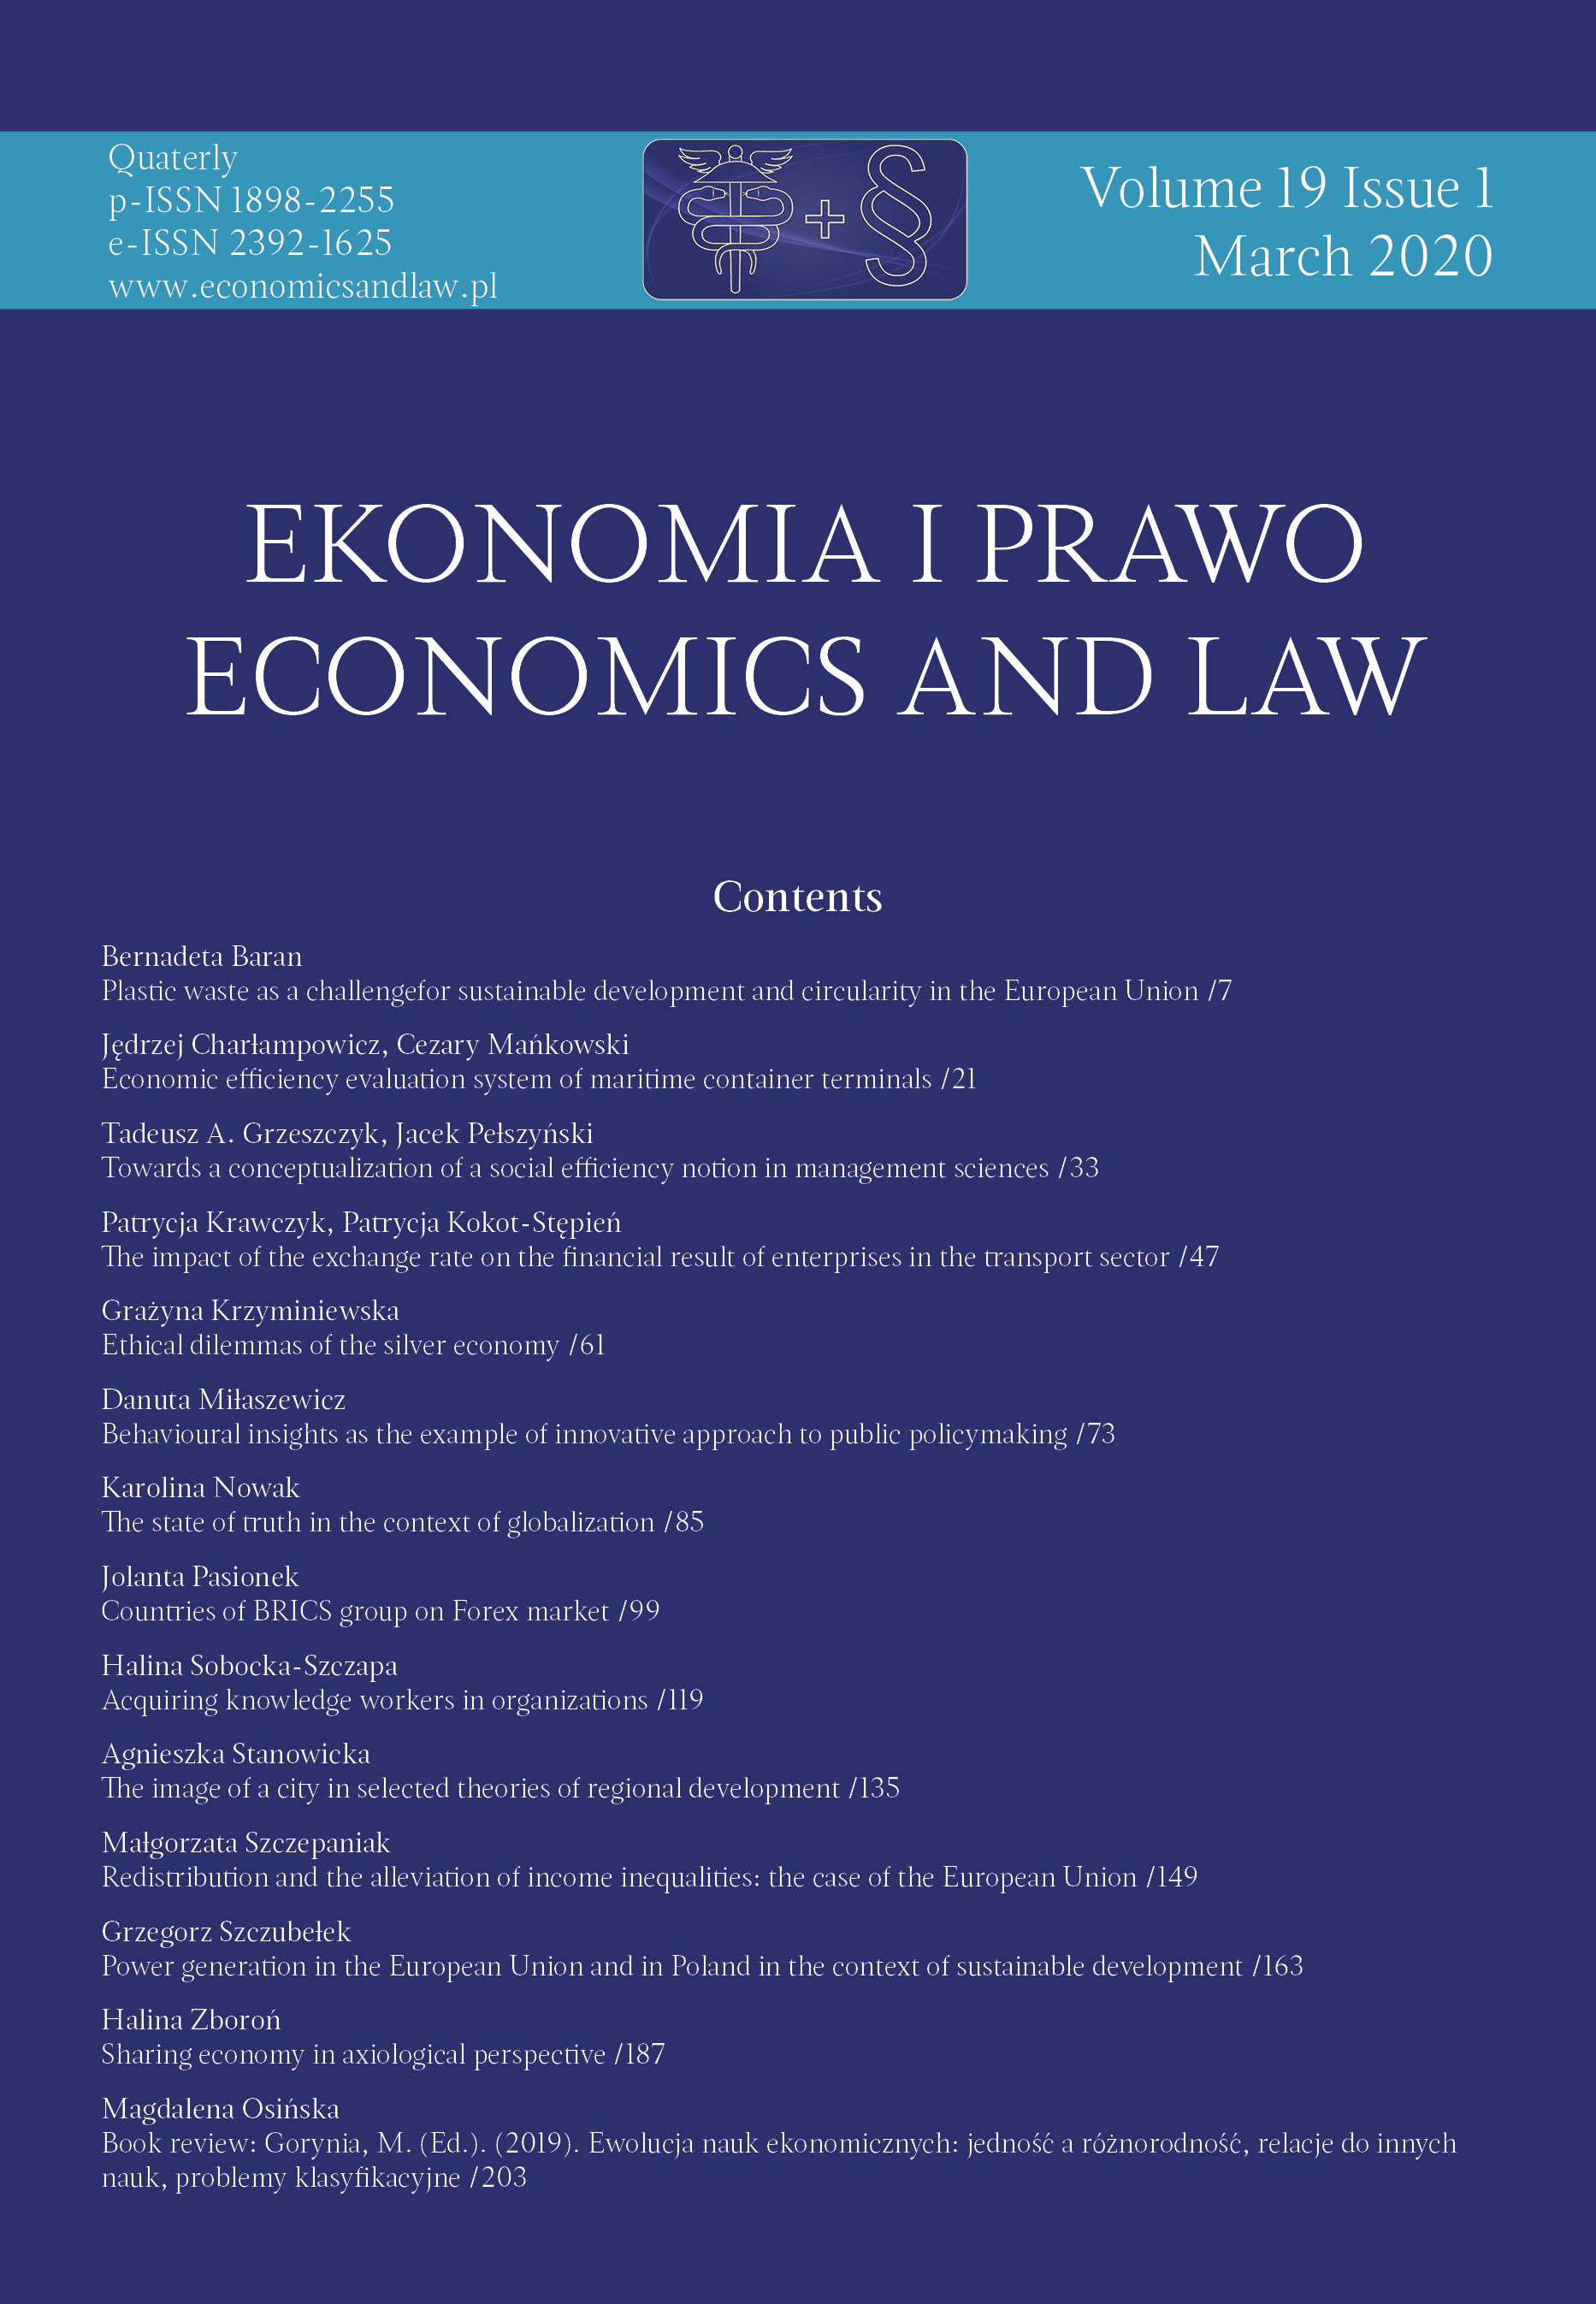 Book review: Gorynia, M. (Ed.). (2019). Ewolucja nauk ekonomicznych: jedność a różnorodność, relacje do innych nauk, problemy klasyfikacyjne Cover Image